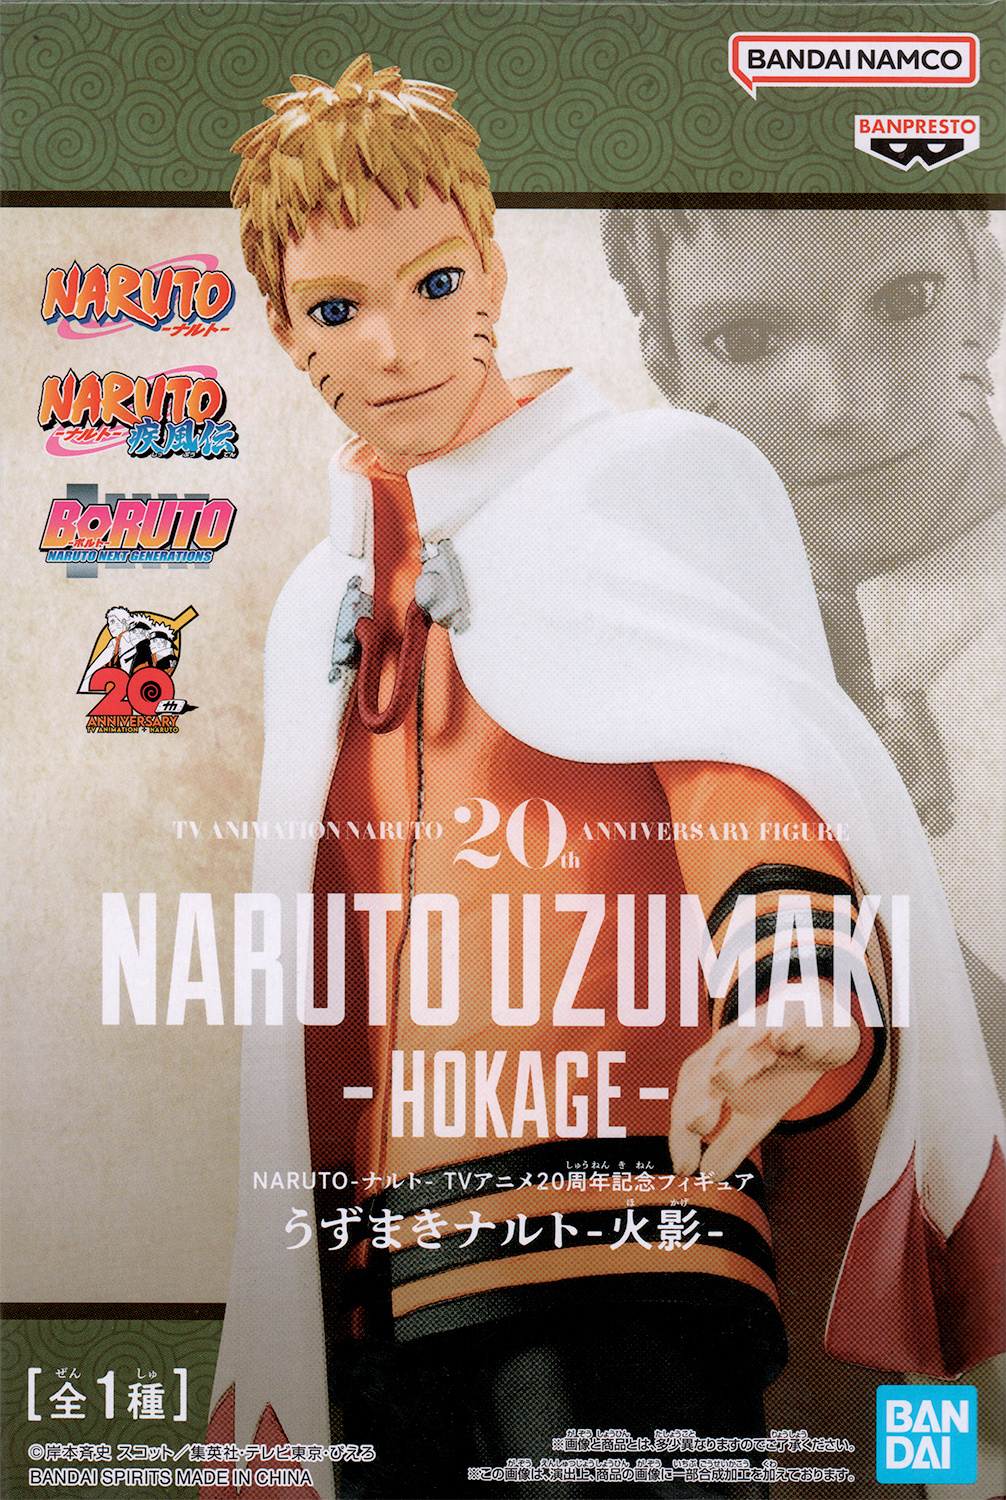 Naruto Uzumaki  Naruto uzumaki hokage, Naruto uzumaki, Naruto